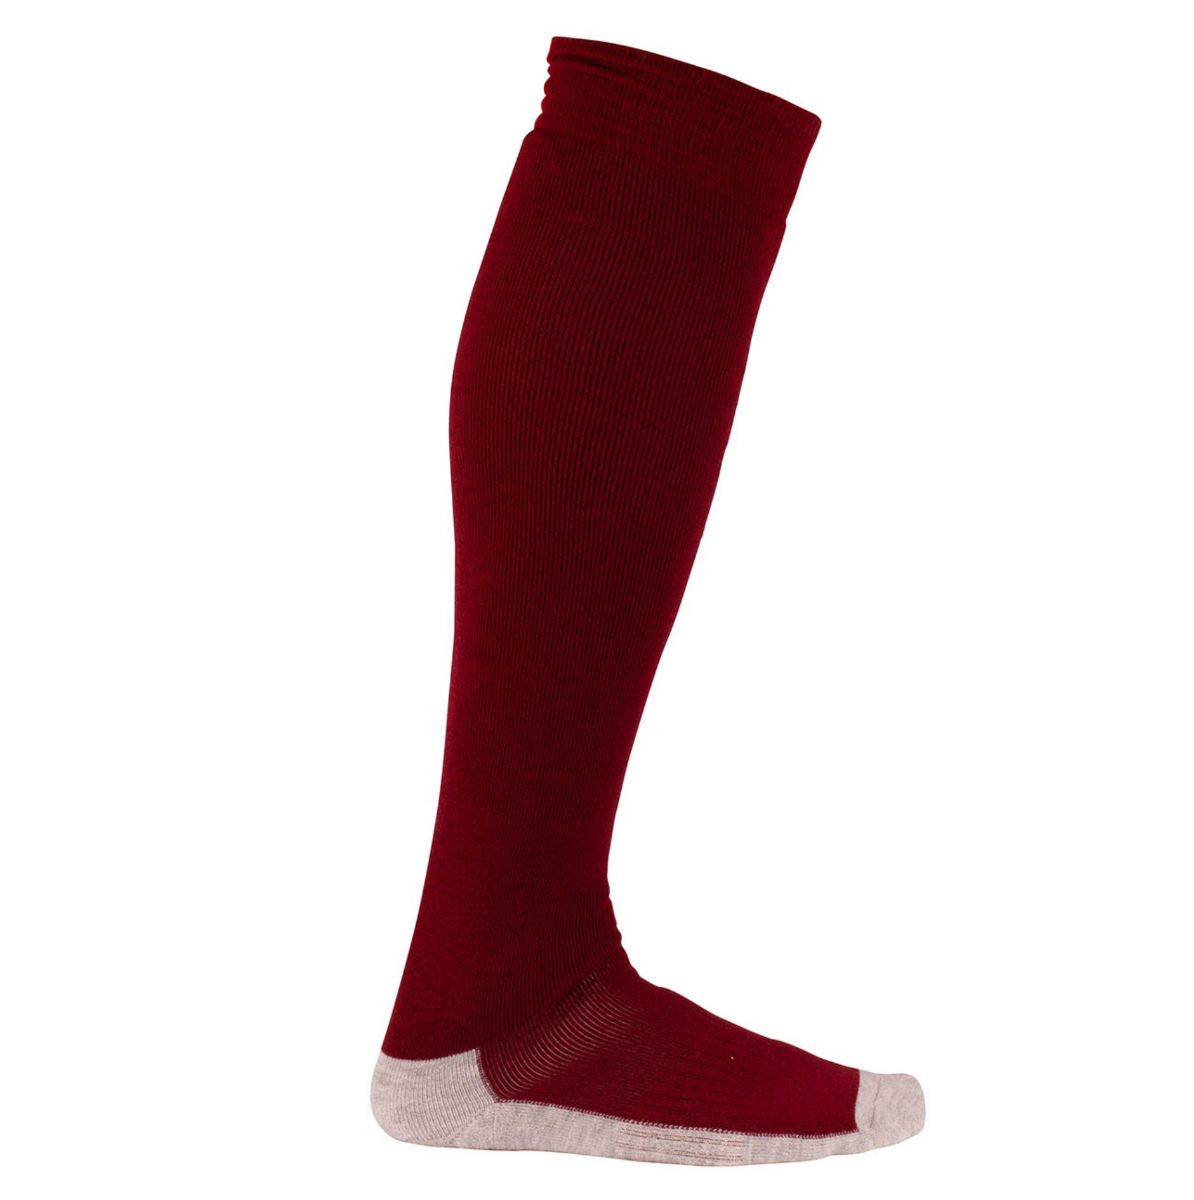 Bilde av Amundsen performance socks 155 Ruby Red